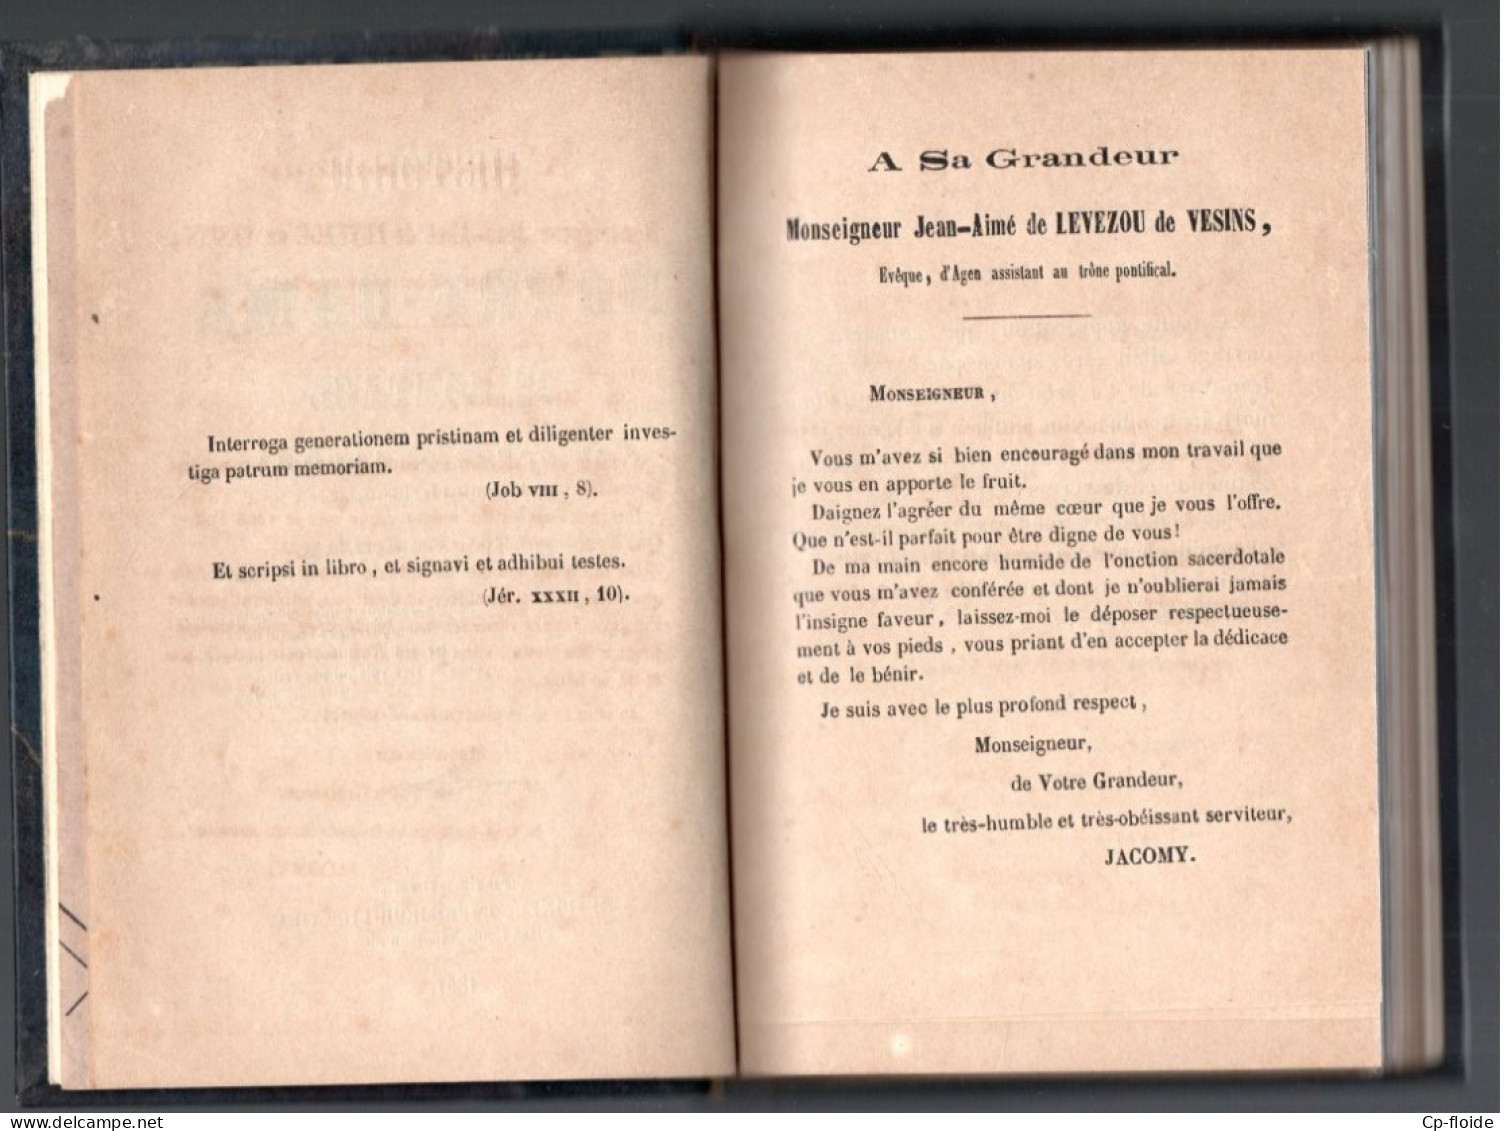 LIVRE  " HISTOIRE DE NOTRE-DAME DE GONTAUD " . PAR L'ABBÉ JACOMY . GONTAUD DE NOGARET - Réf. N°252L - - Aquitaine